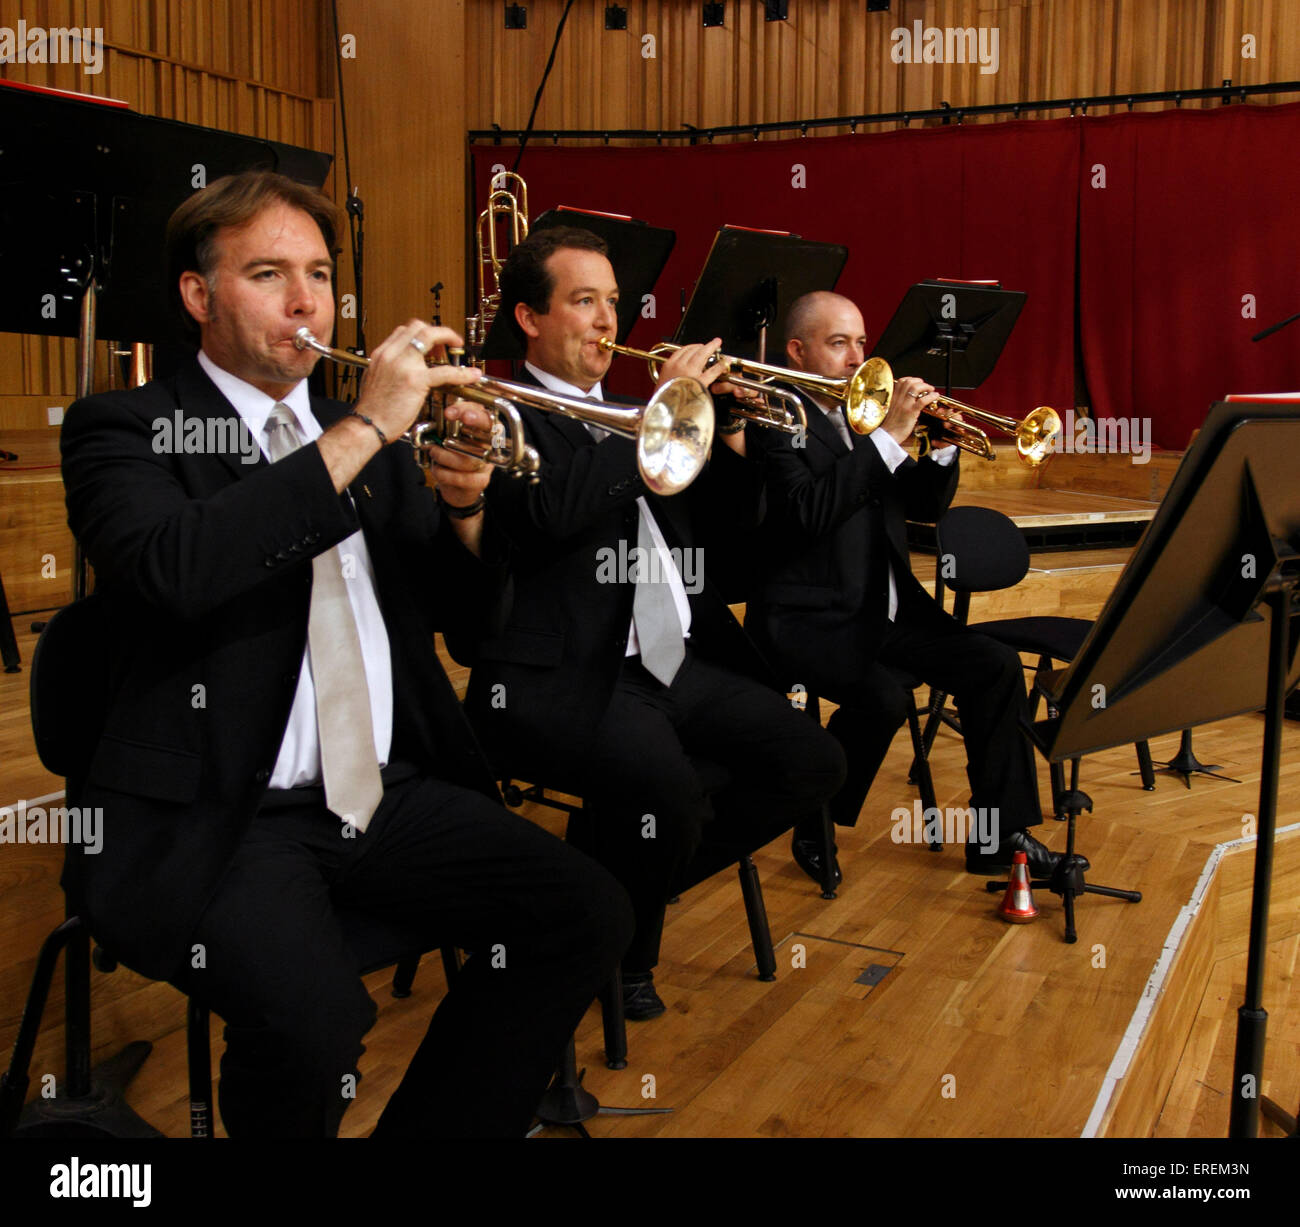 Sección de trompeta orquestal, tres jugadores celebrando sus trompetas. Foto de stock